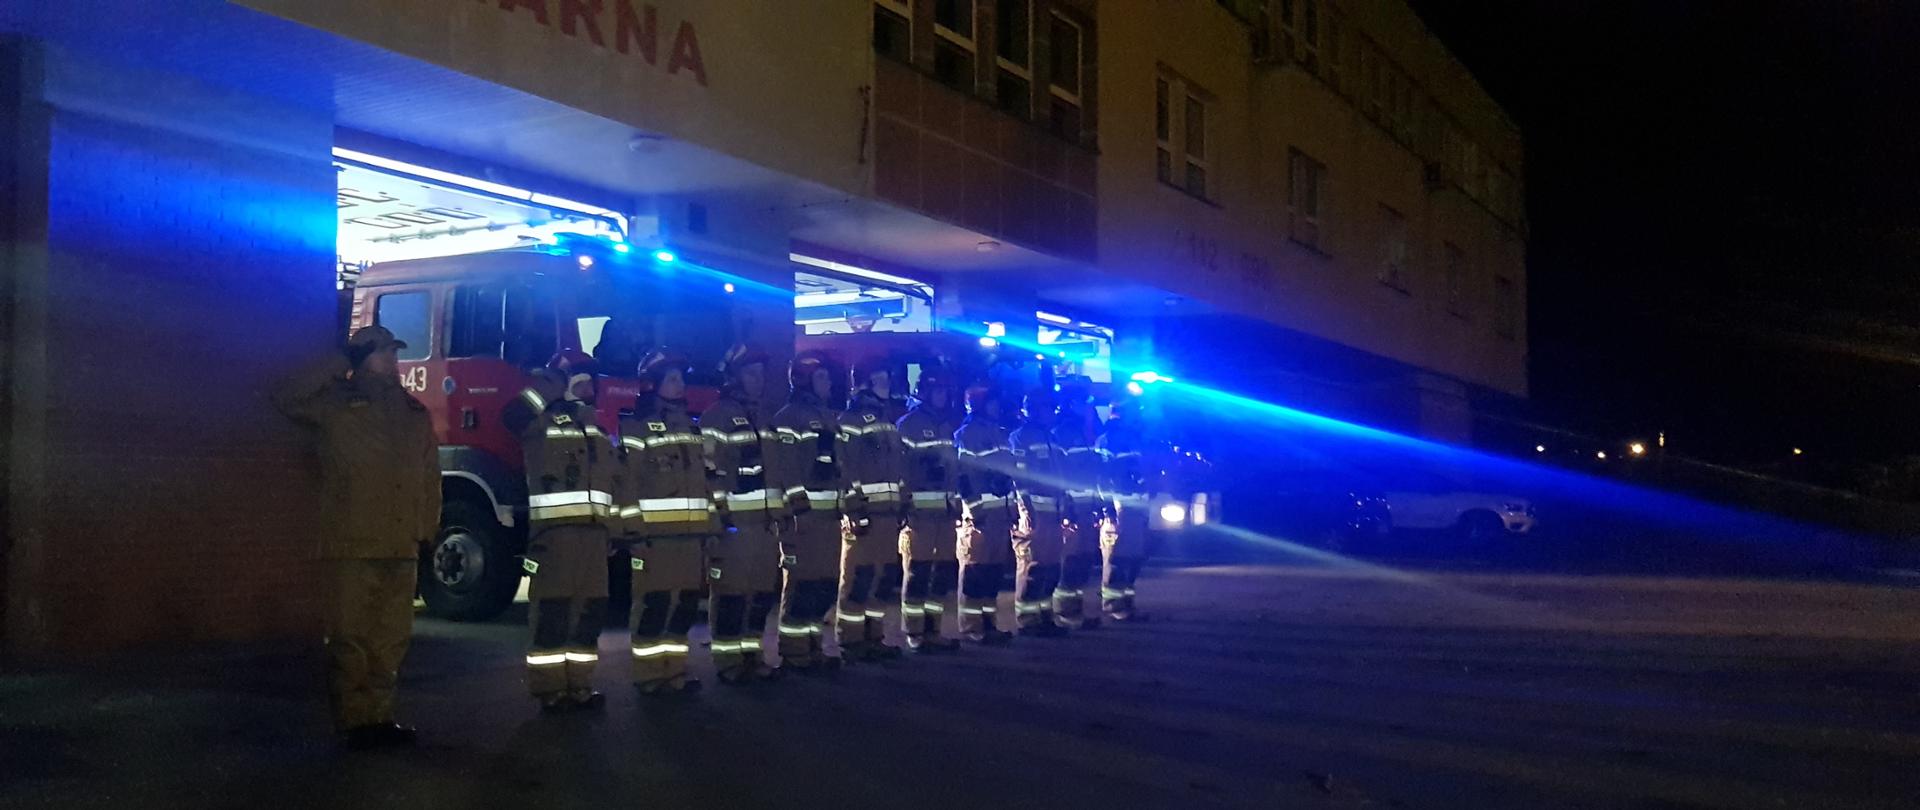 Strażacy przed strażnicą oddają hołd dla druhów z Czernikowa przed garażami. Strażacy w pełnym umundurowaniu bojowym. W tle trzy samochody ratowniczo - gaśnicze na sygnałach świetlnych